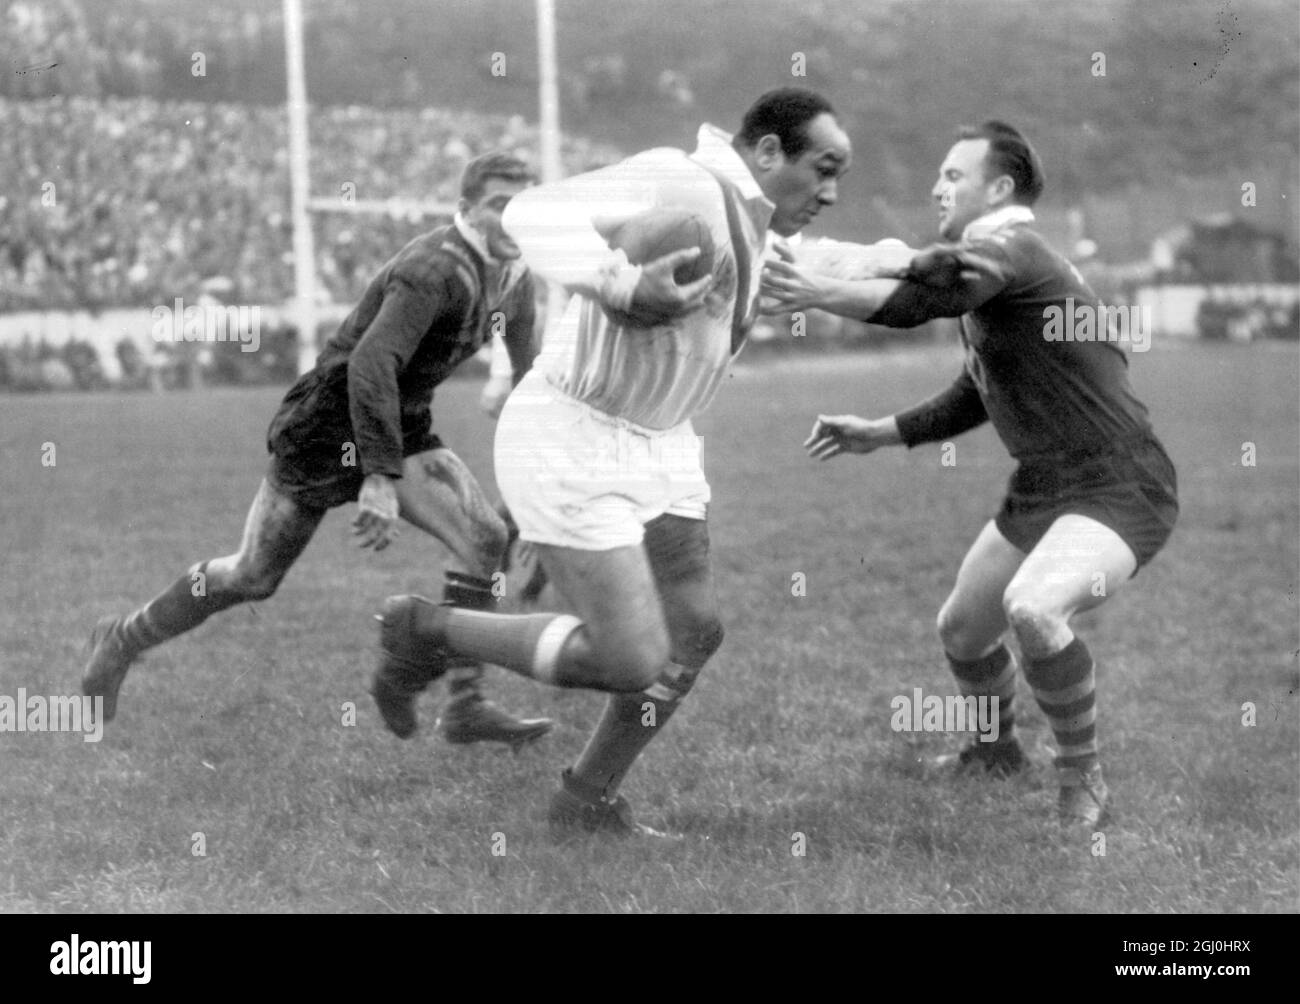 Bradford, Yorkshire : W. Boston, Grande-Bretagne, s'éloigne avec le ballon tandis qu'il brate Gasnier et Carlson, tous deux d'Australie, lors du match décisif de la coupe du monde de rugby entre l'Australie et la Grande-Bretagne à Bradford cet après-midi. 8 octobre 1960 Banque D'Images